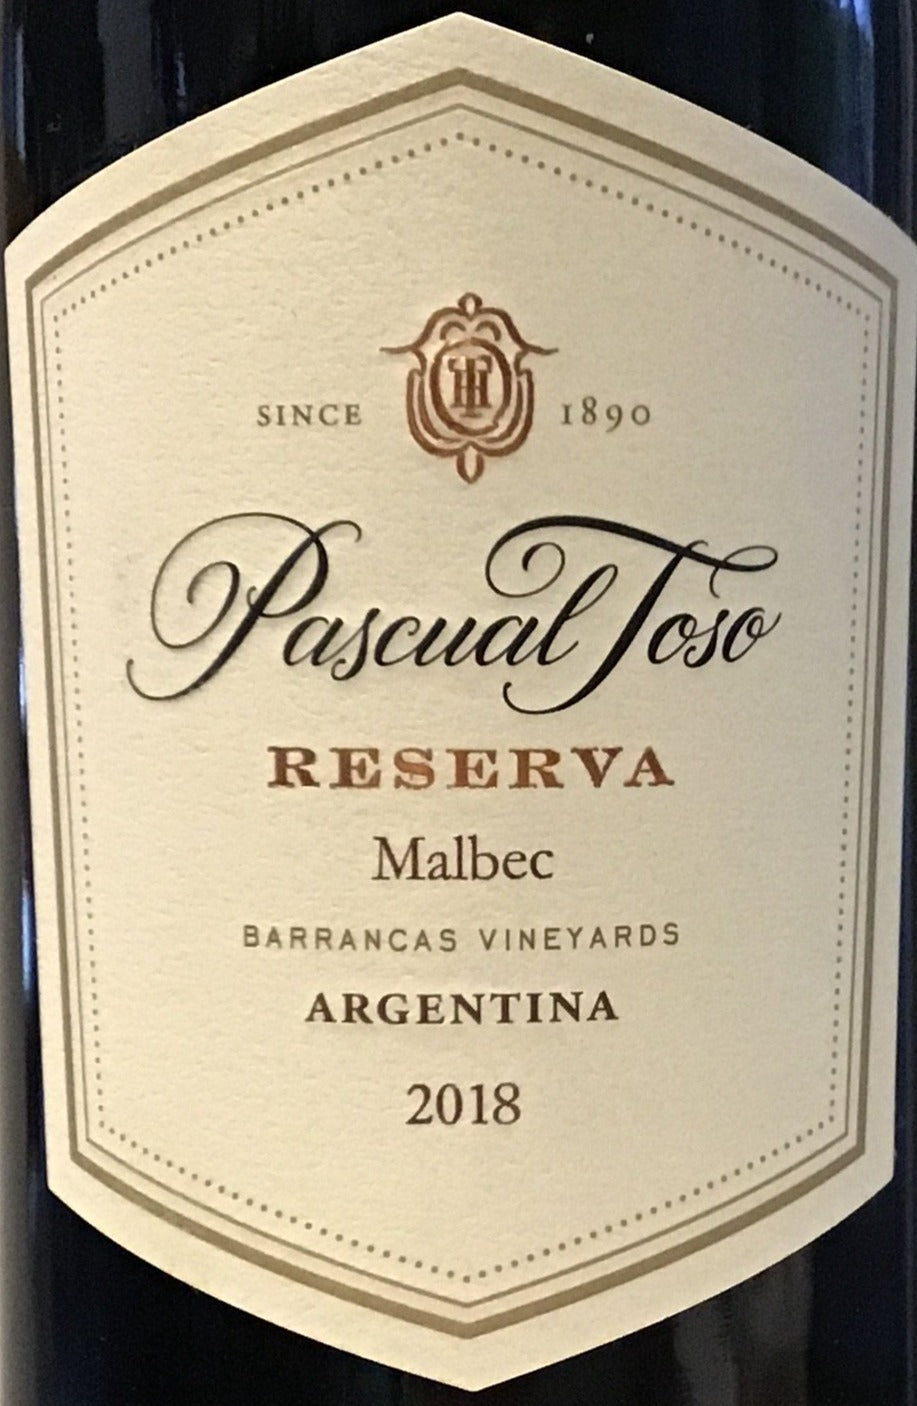 Pascual Toso 'Reserva' - Malbec